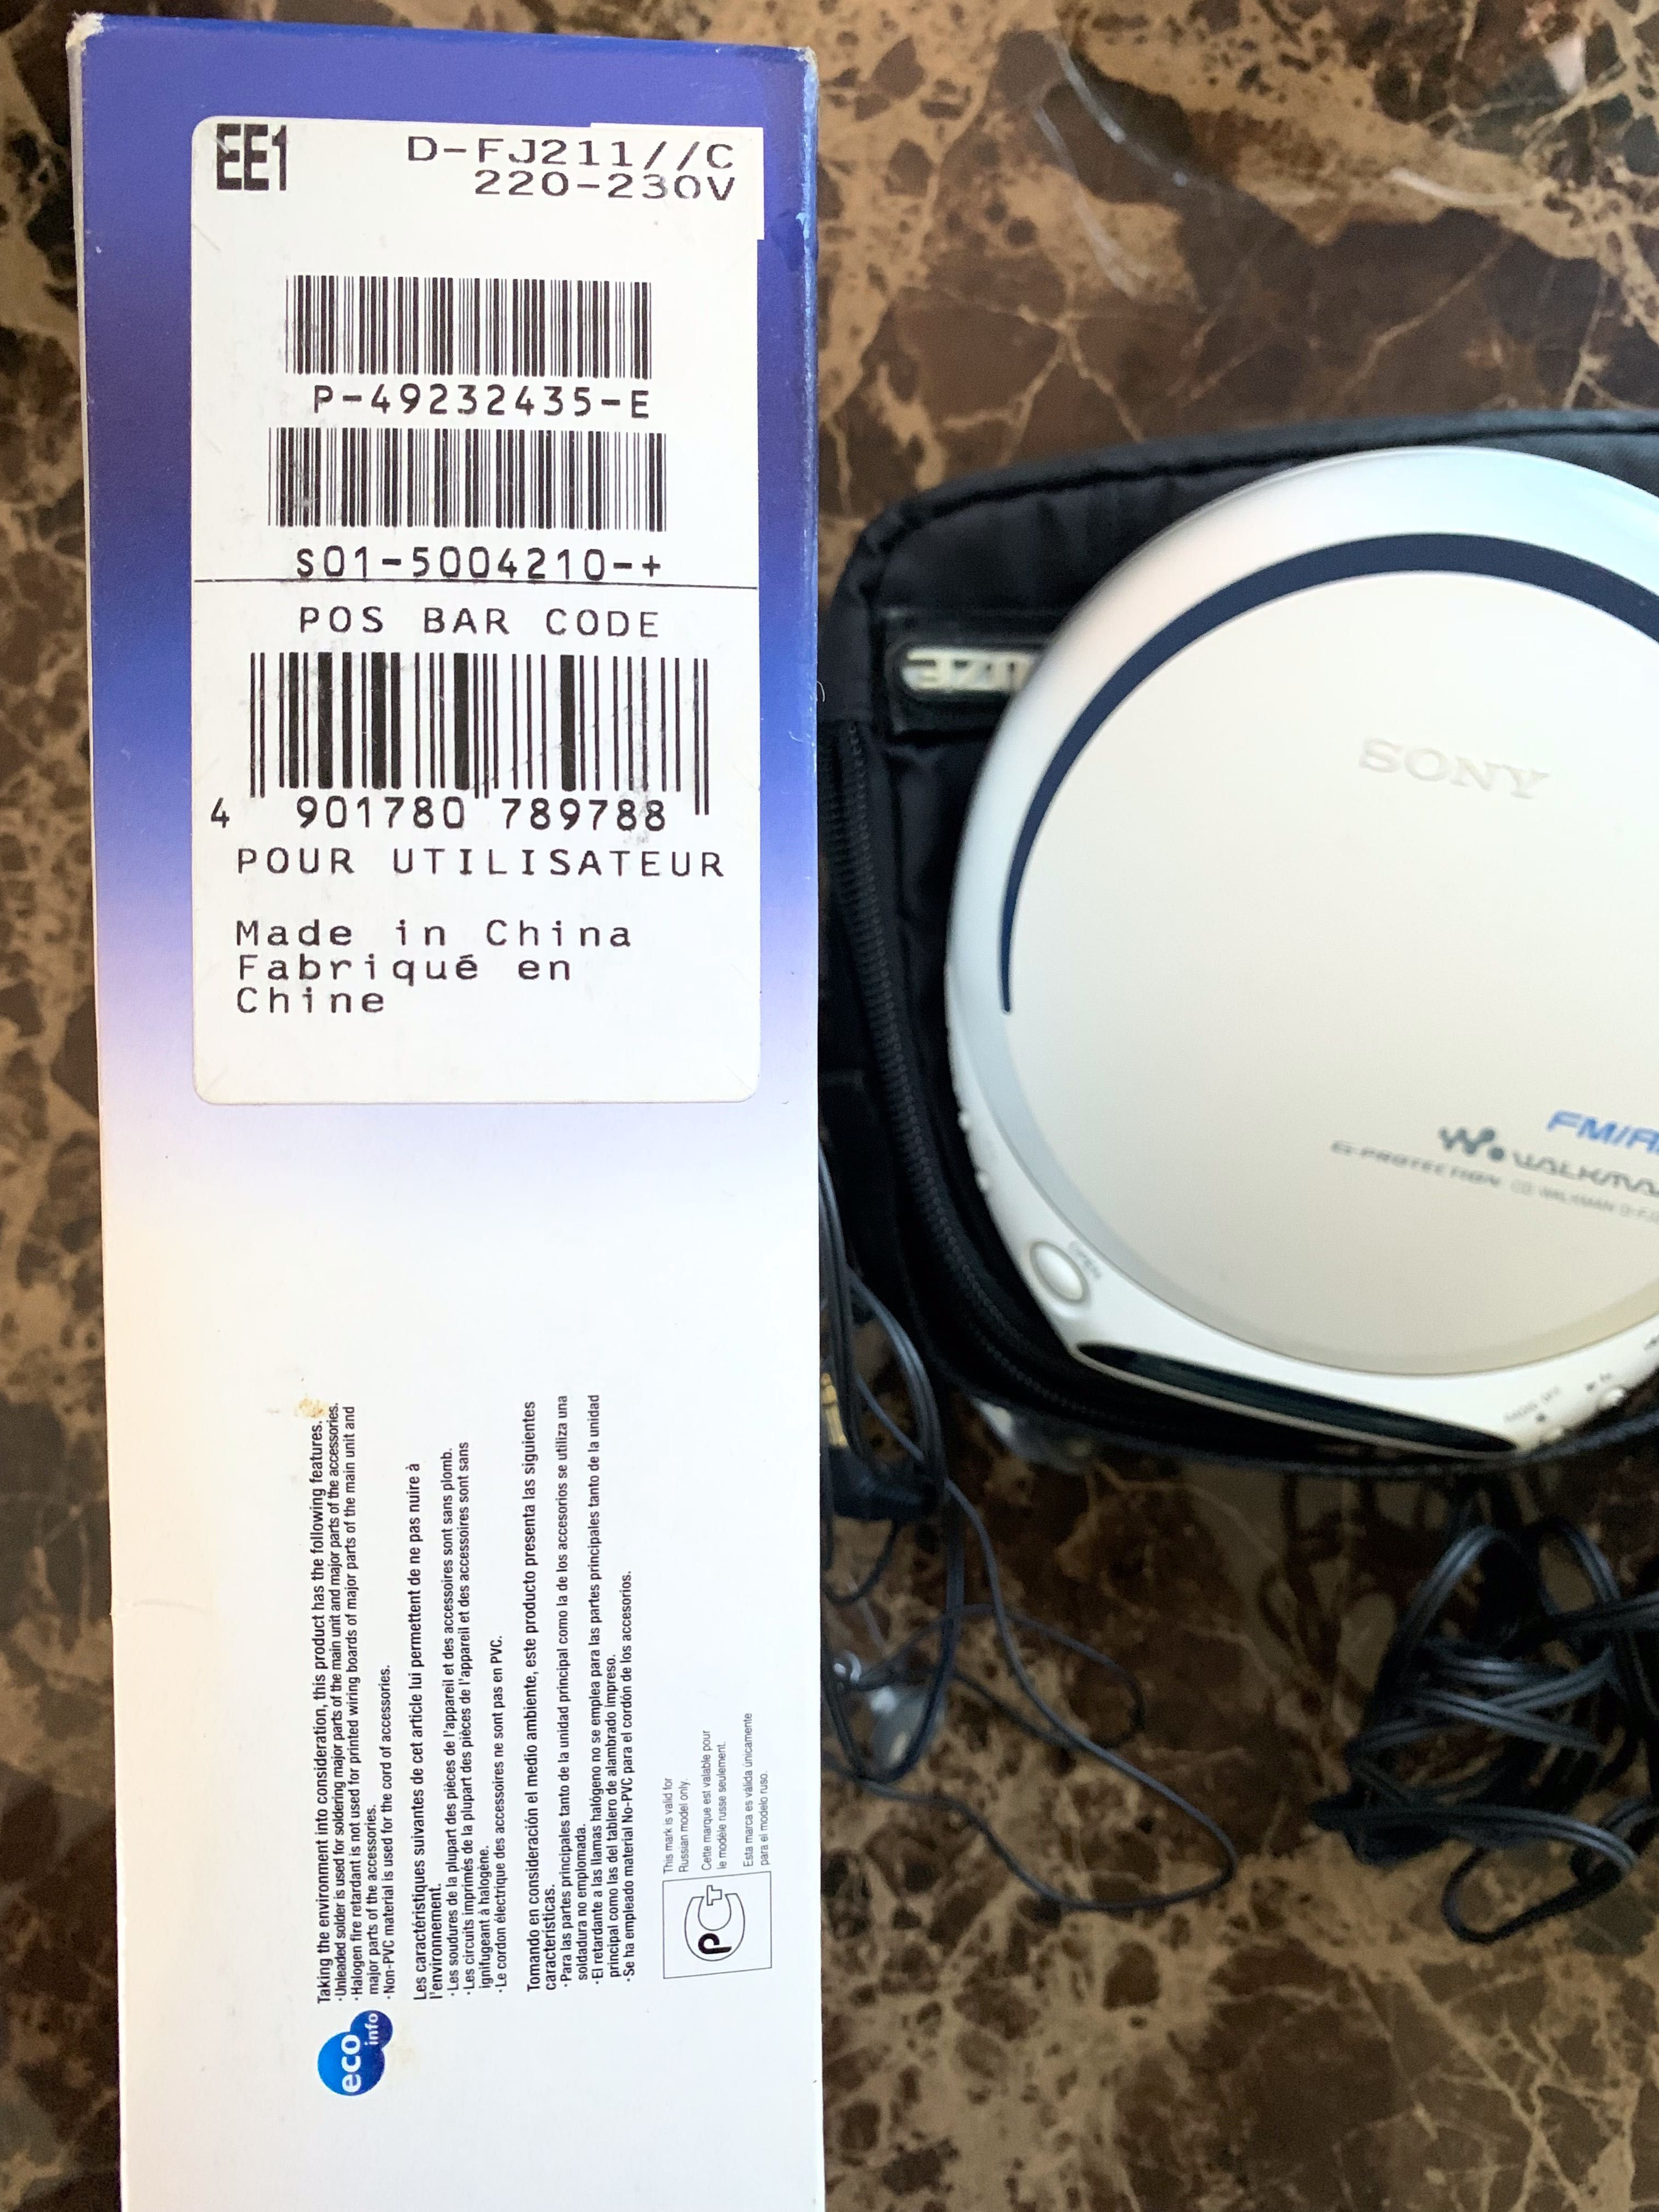 CD-R/RW плеер Sony Walkman D-FJ211